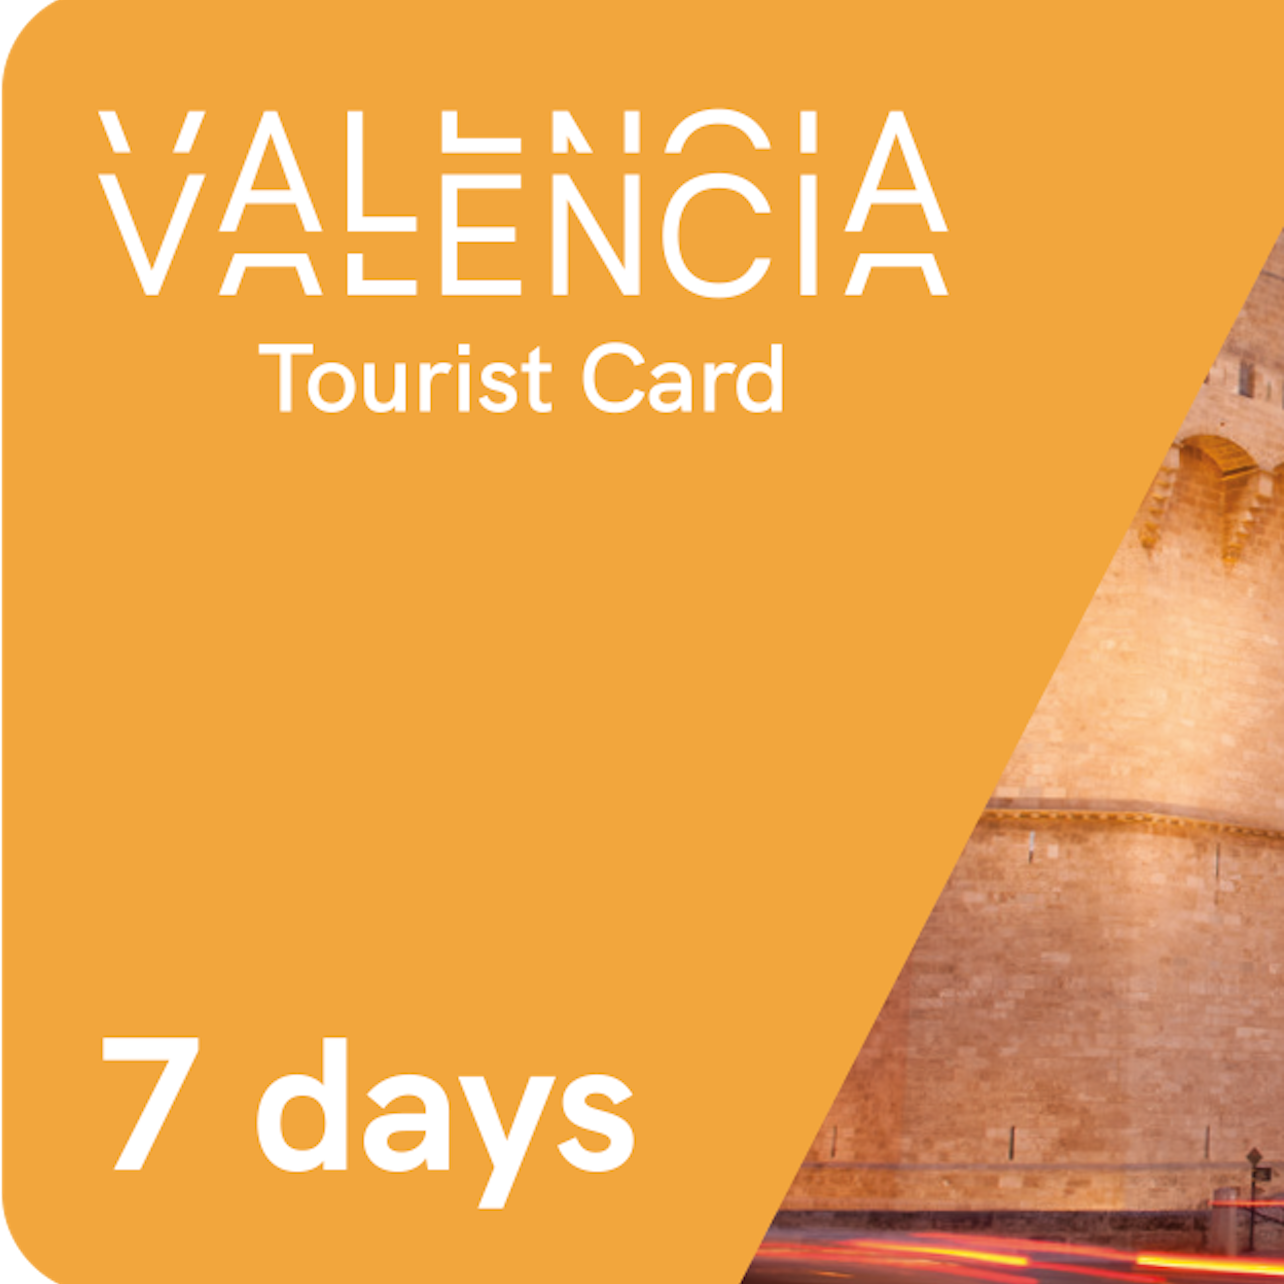 Tarjeta Turística Valencia 7 Días (transporte no incluido) - Alojamientos en Valencia